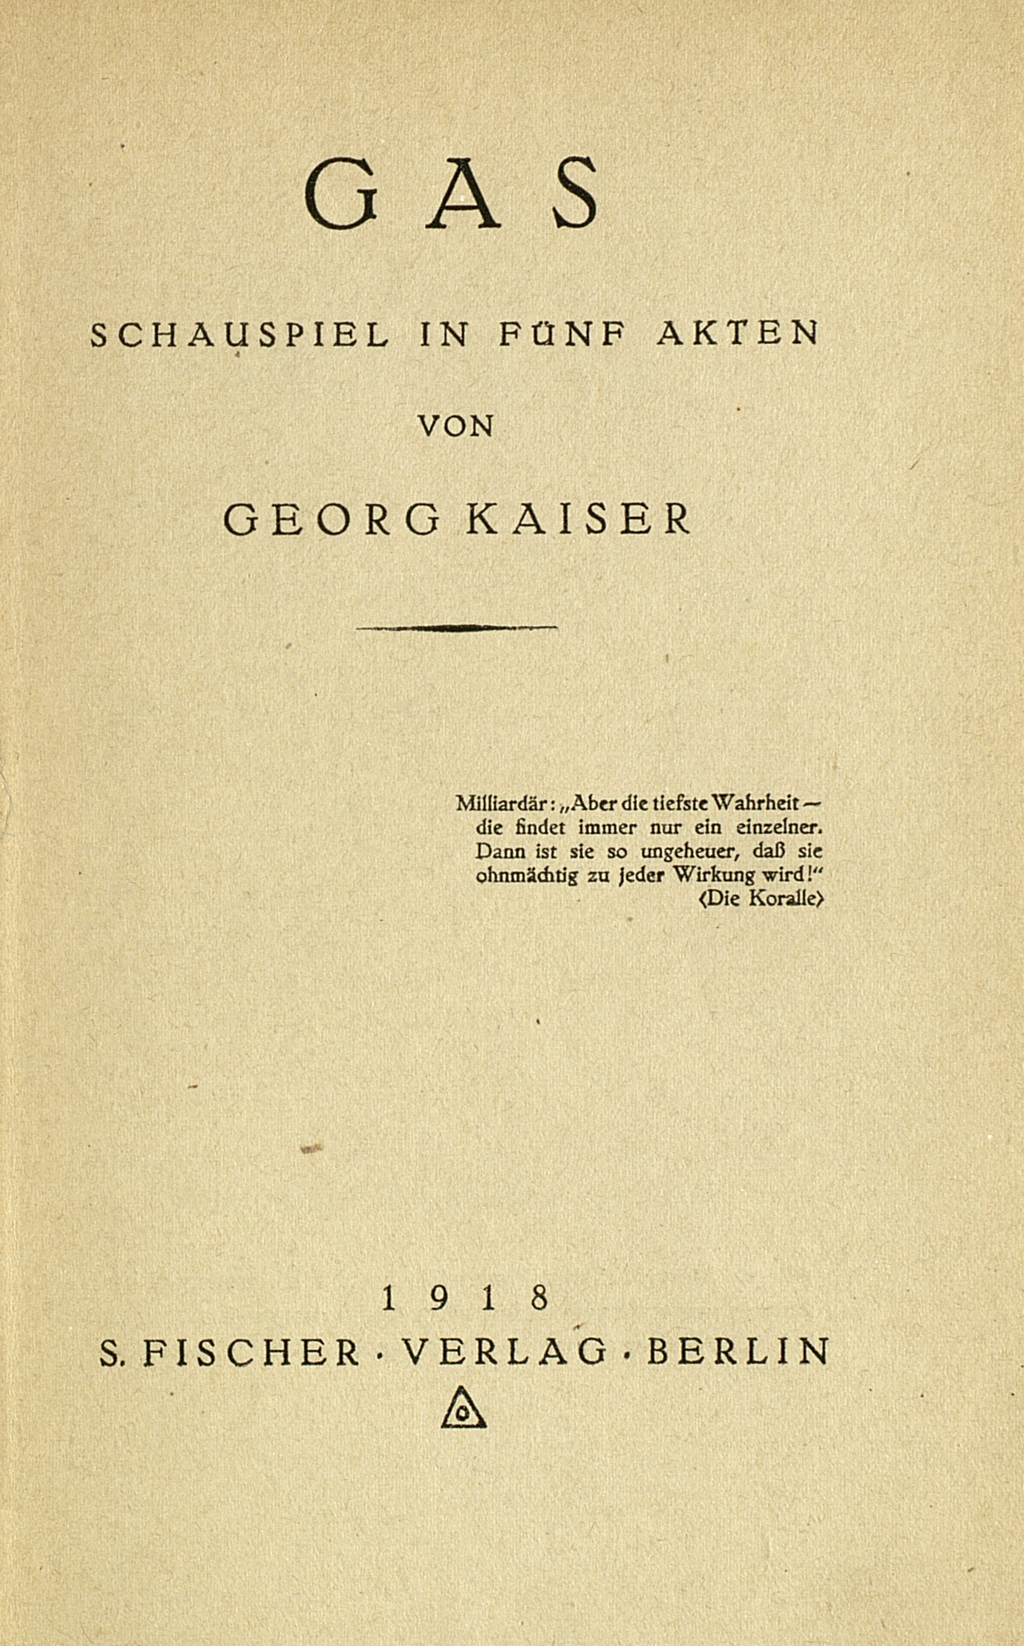 Zu sehen ist das Titelblatt der Erstausgabe von Georg Kaisers Schauspiel "Gas" aus dem Jahr 1918.